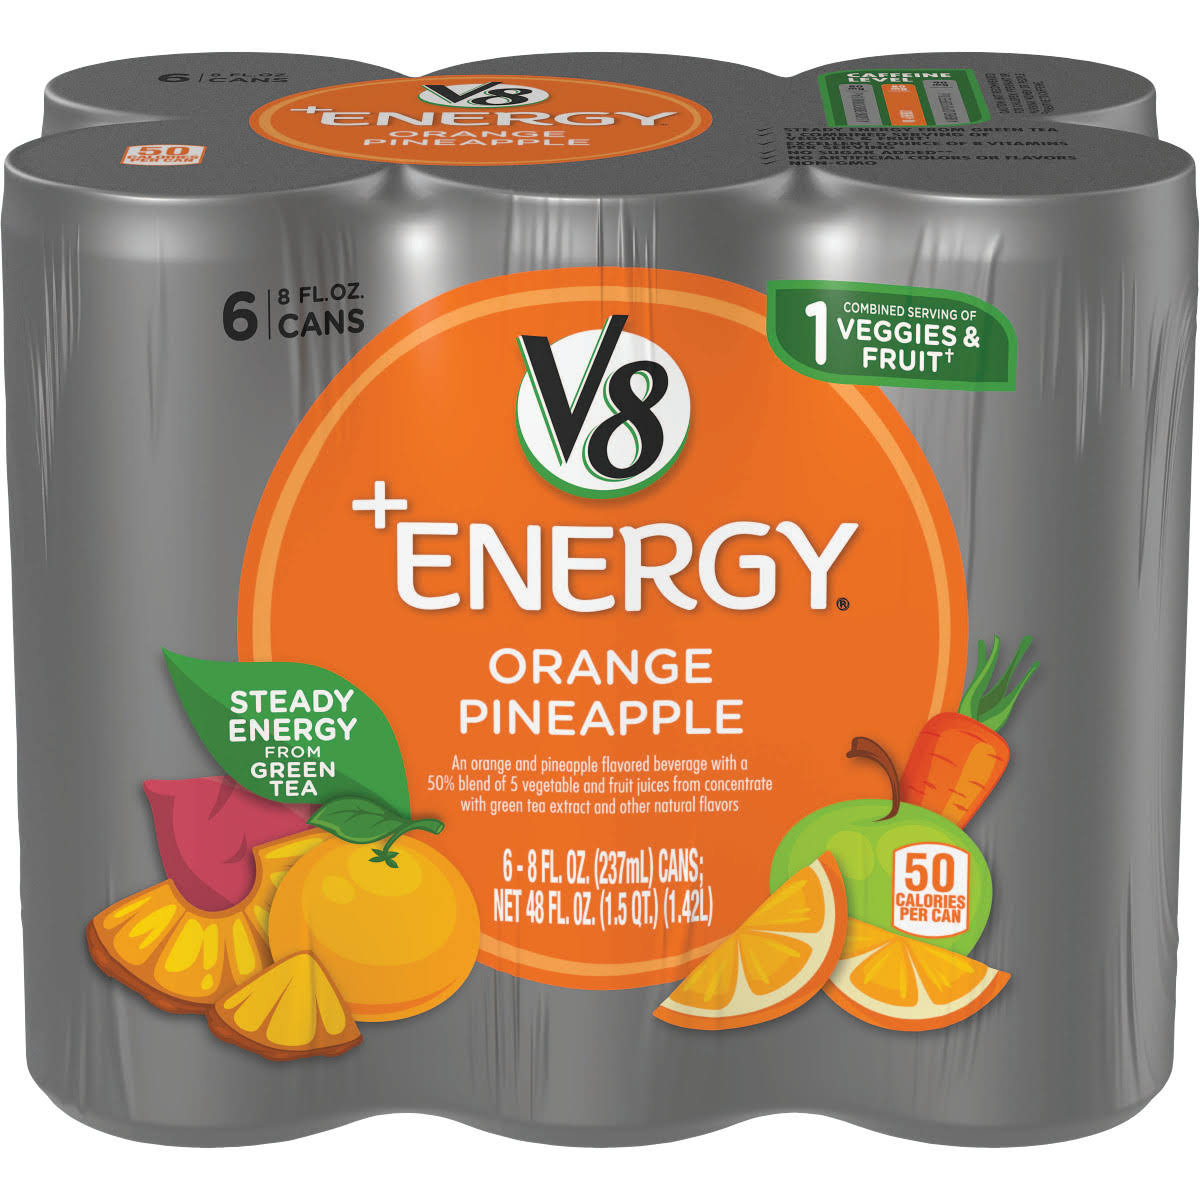 V8 V-Fusion + Energy Vegetable & Fruit Juice, Orange Pineapple - 6 pack, 8 fl oz cans